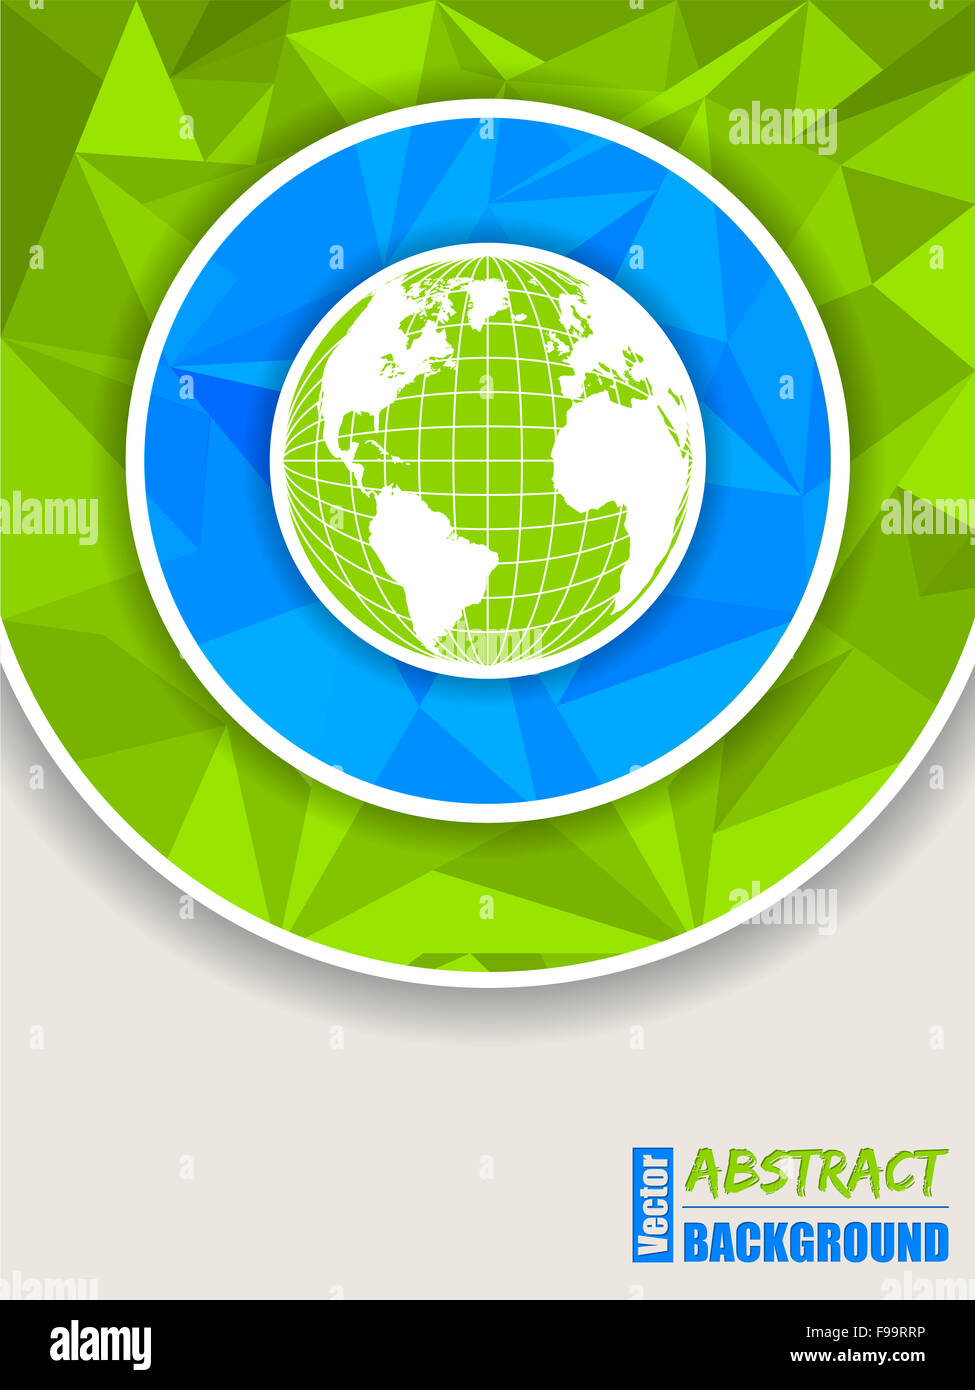 Abstrakt grün blaue Broschüre mit Polygonen und Globus Stockfoto